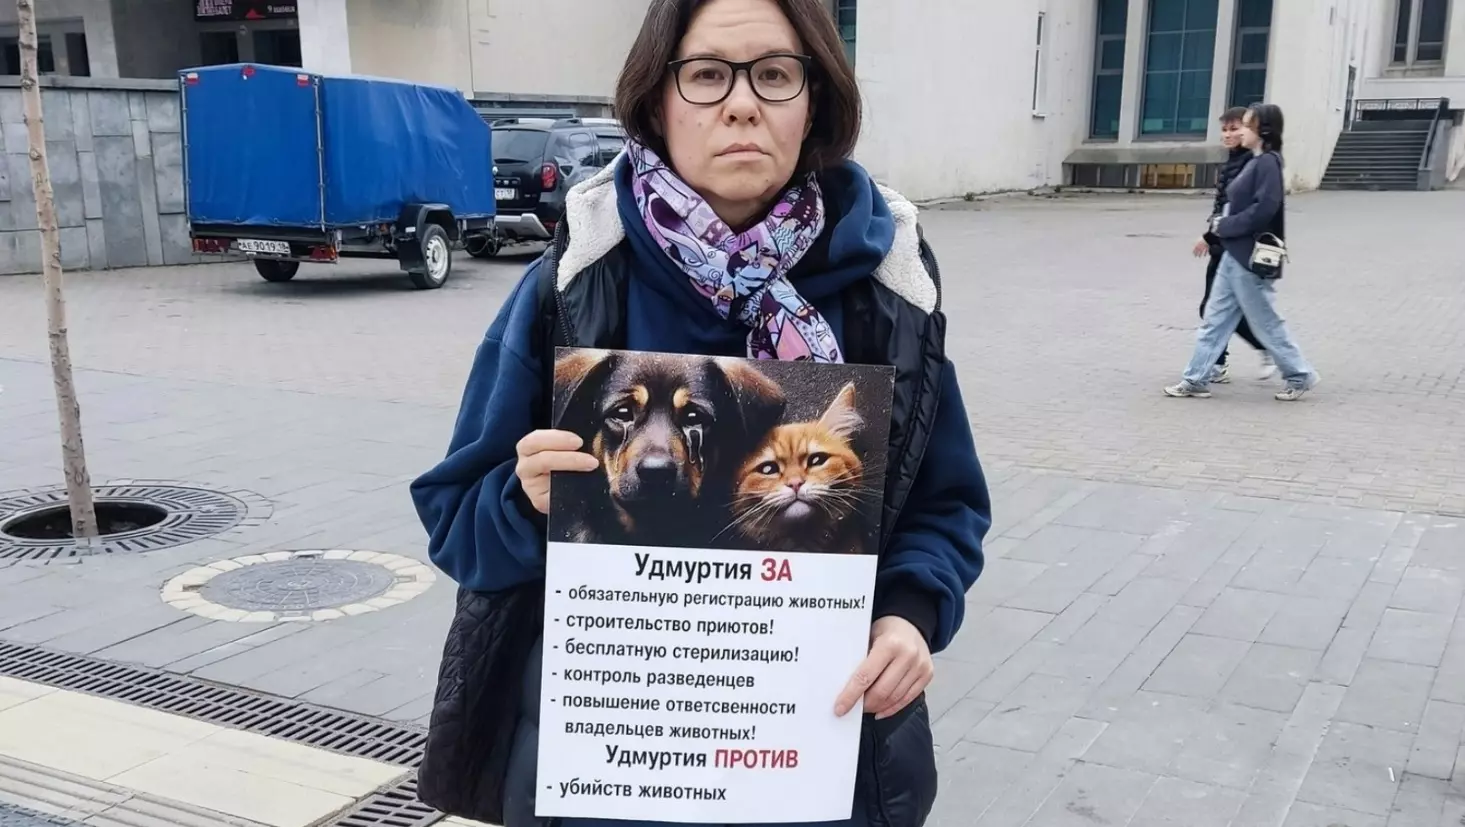 Убийства не решат проблему: пикеты против эвтаназии бездомных животных идут в Ижевске